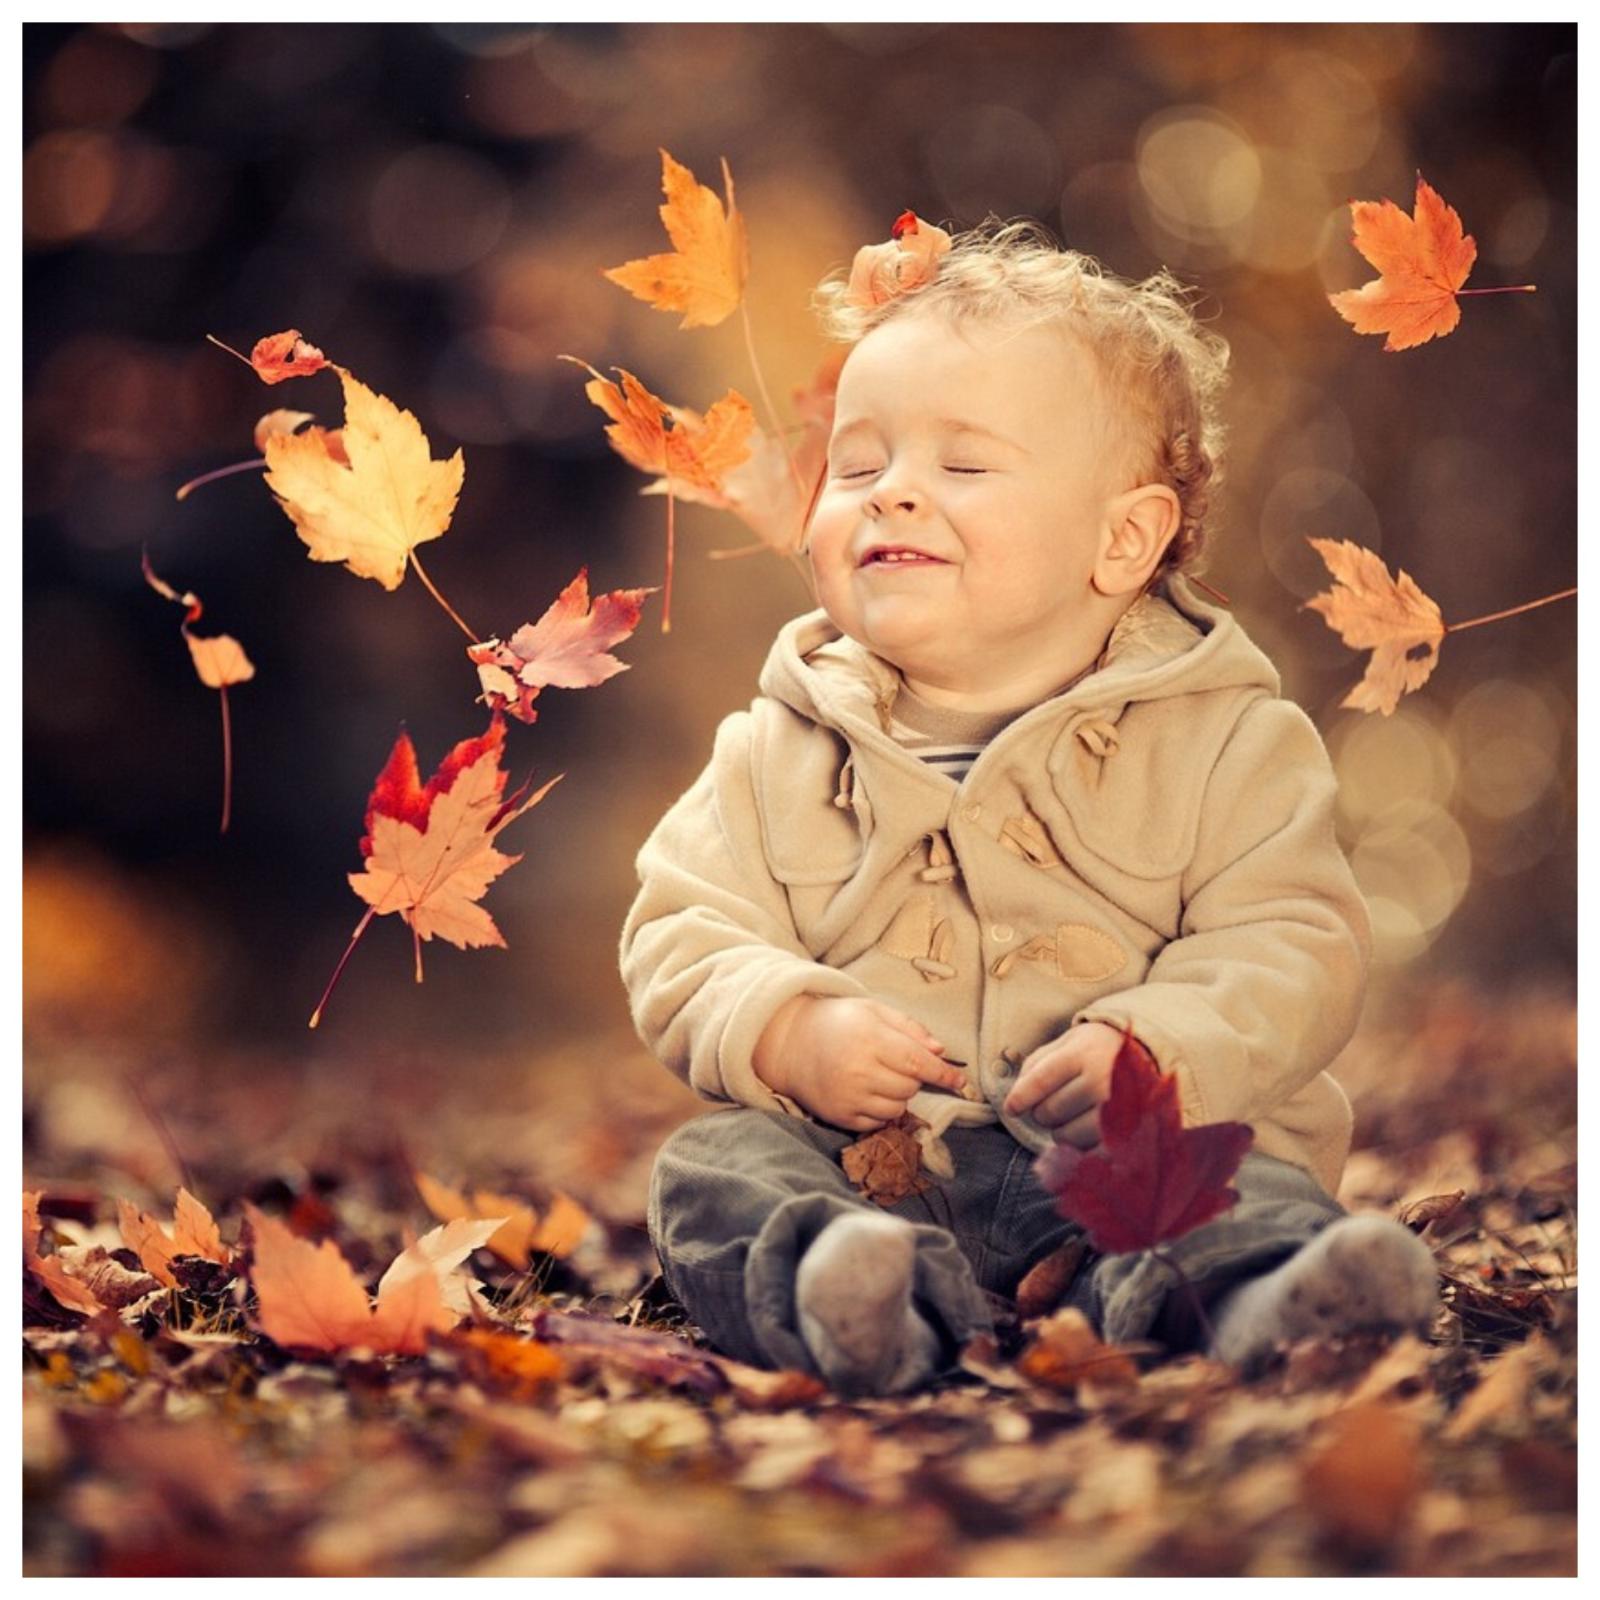 Осенние пейзажи отлично подходят для памятной семейной фотосессии